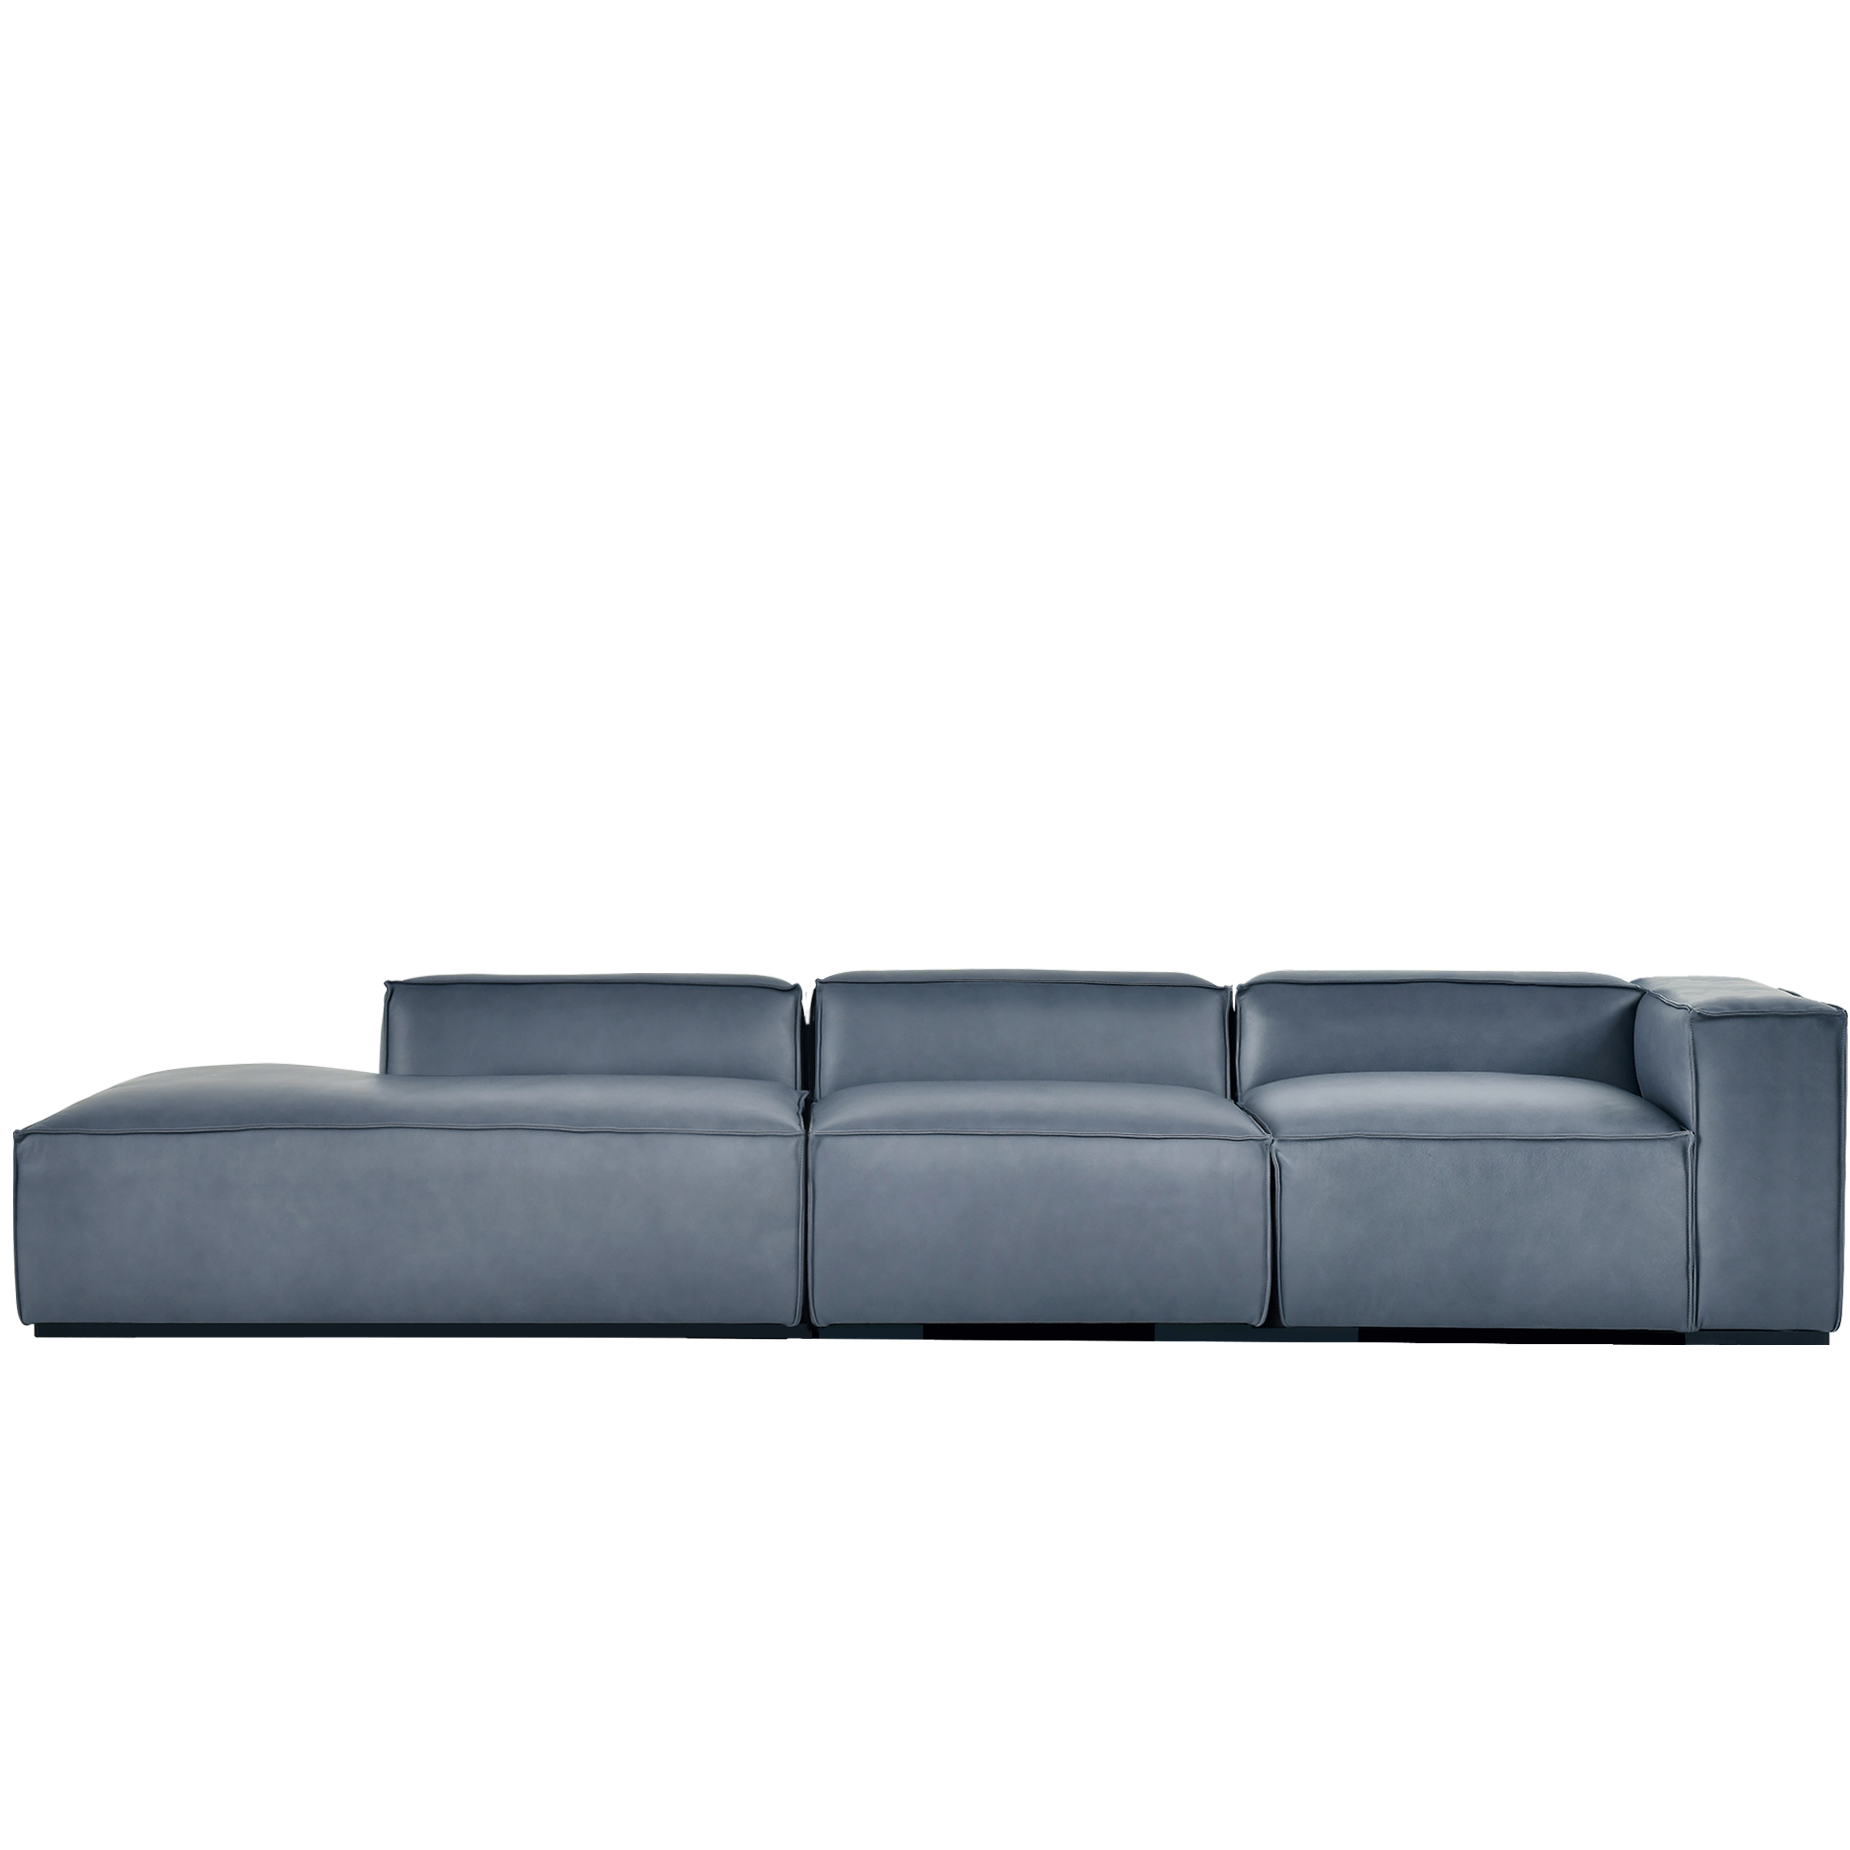 (주)도이치 DOICH ®    PEN16 modular couch sofa 도이치 펜16  4인 카우치 모듈소파